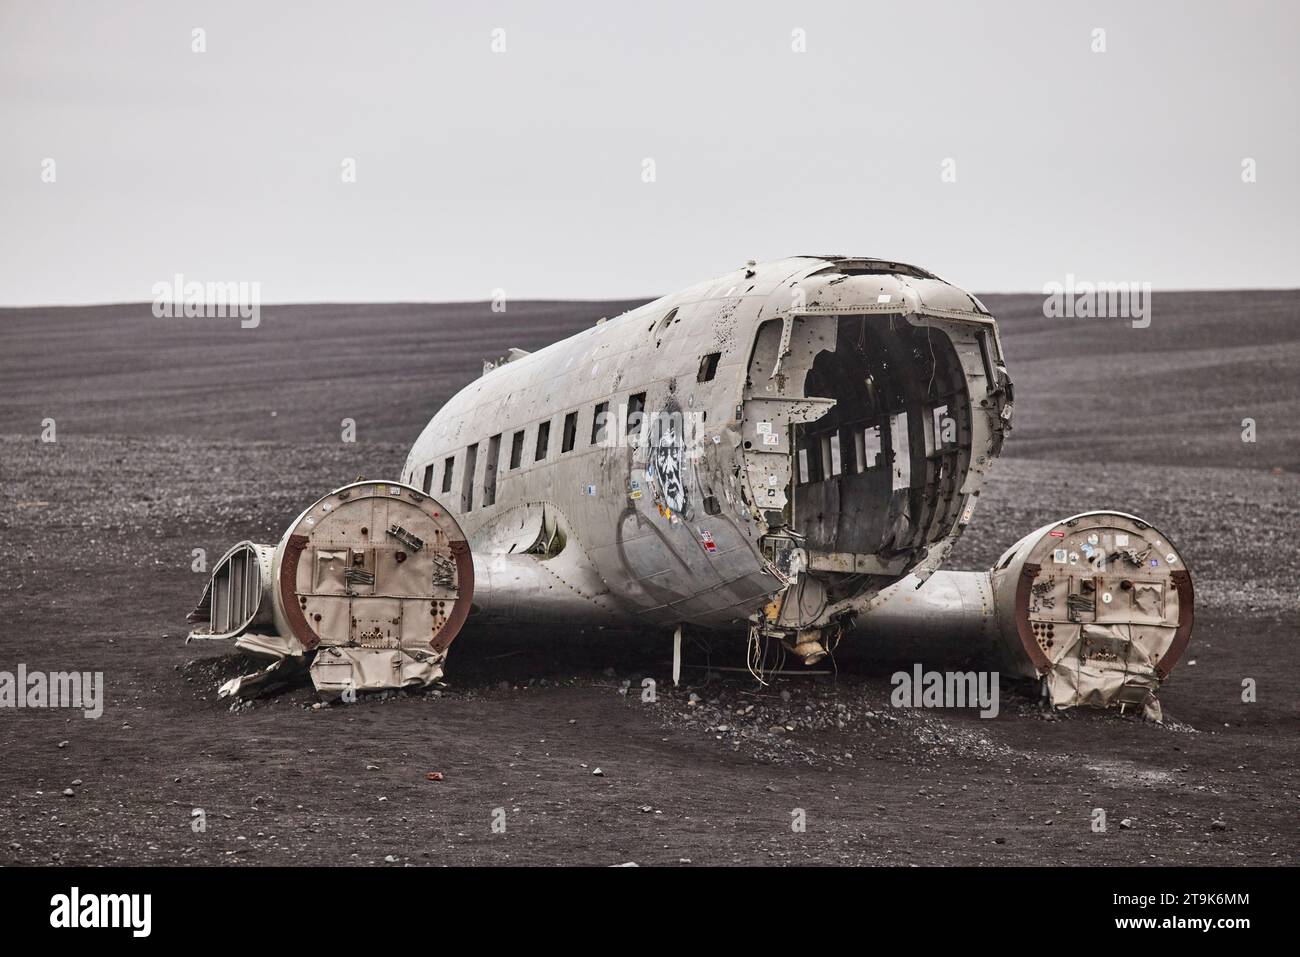 Islande Solheimasandur plane Wreck s'est écrasé DC-3 plane sur la plage Banque D'Images